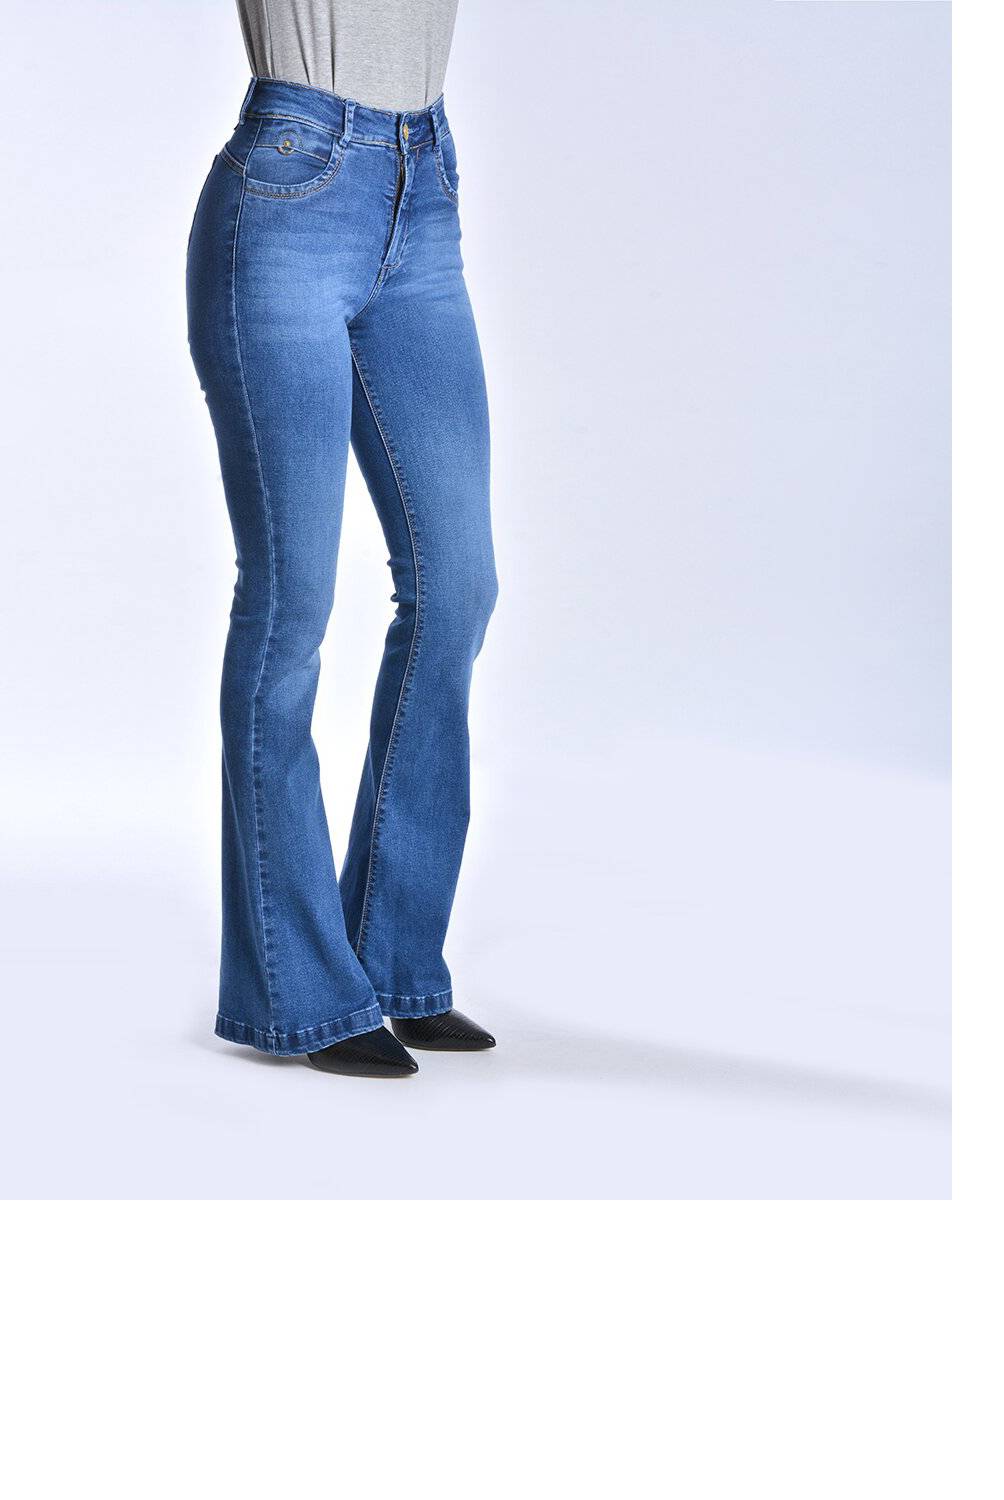 AMALIA JEANS - Jeans Flare High Waist